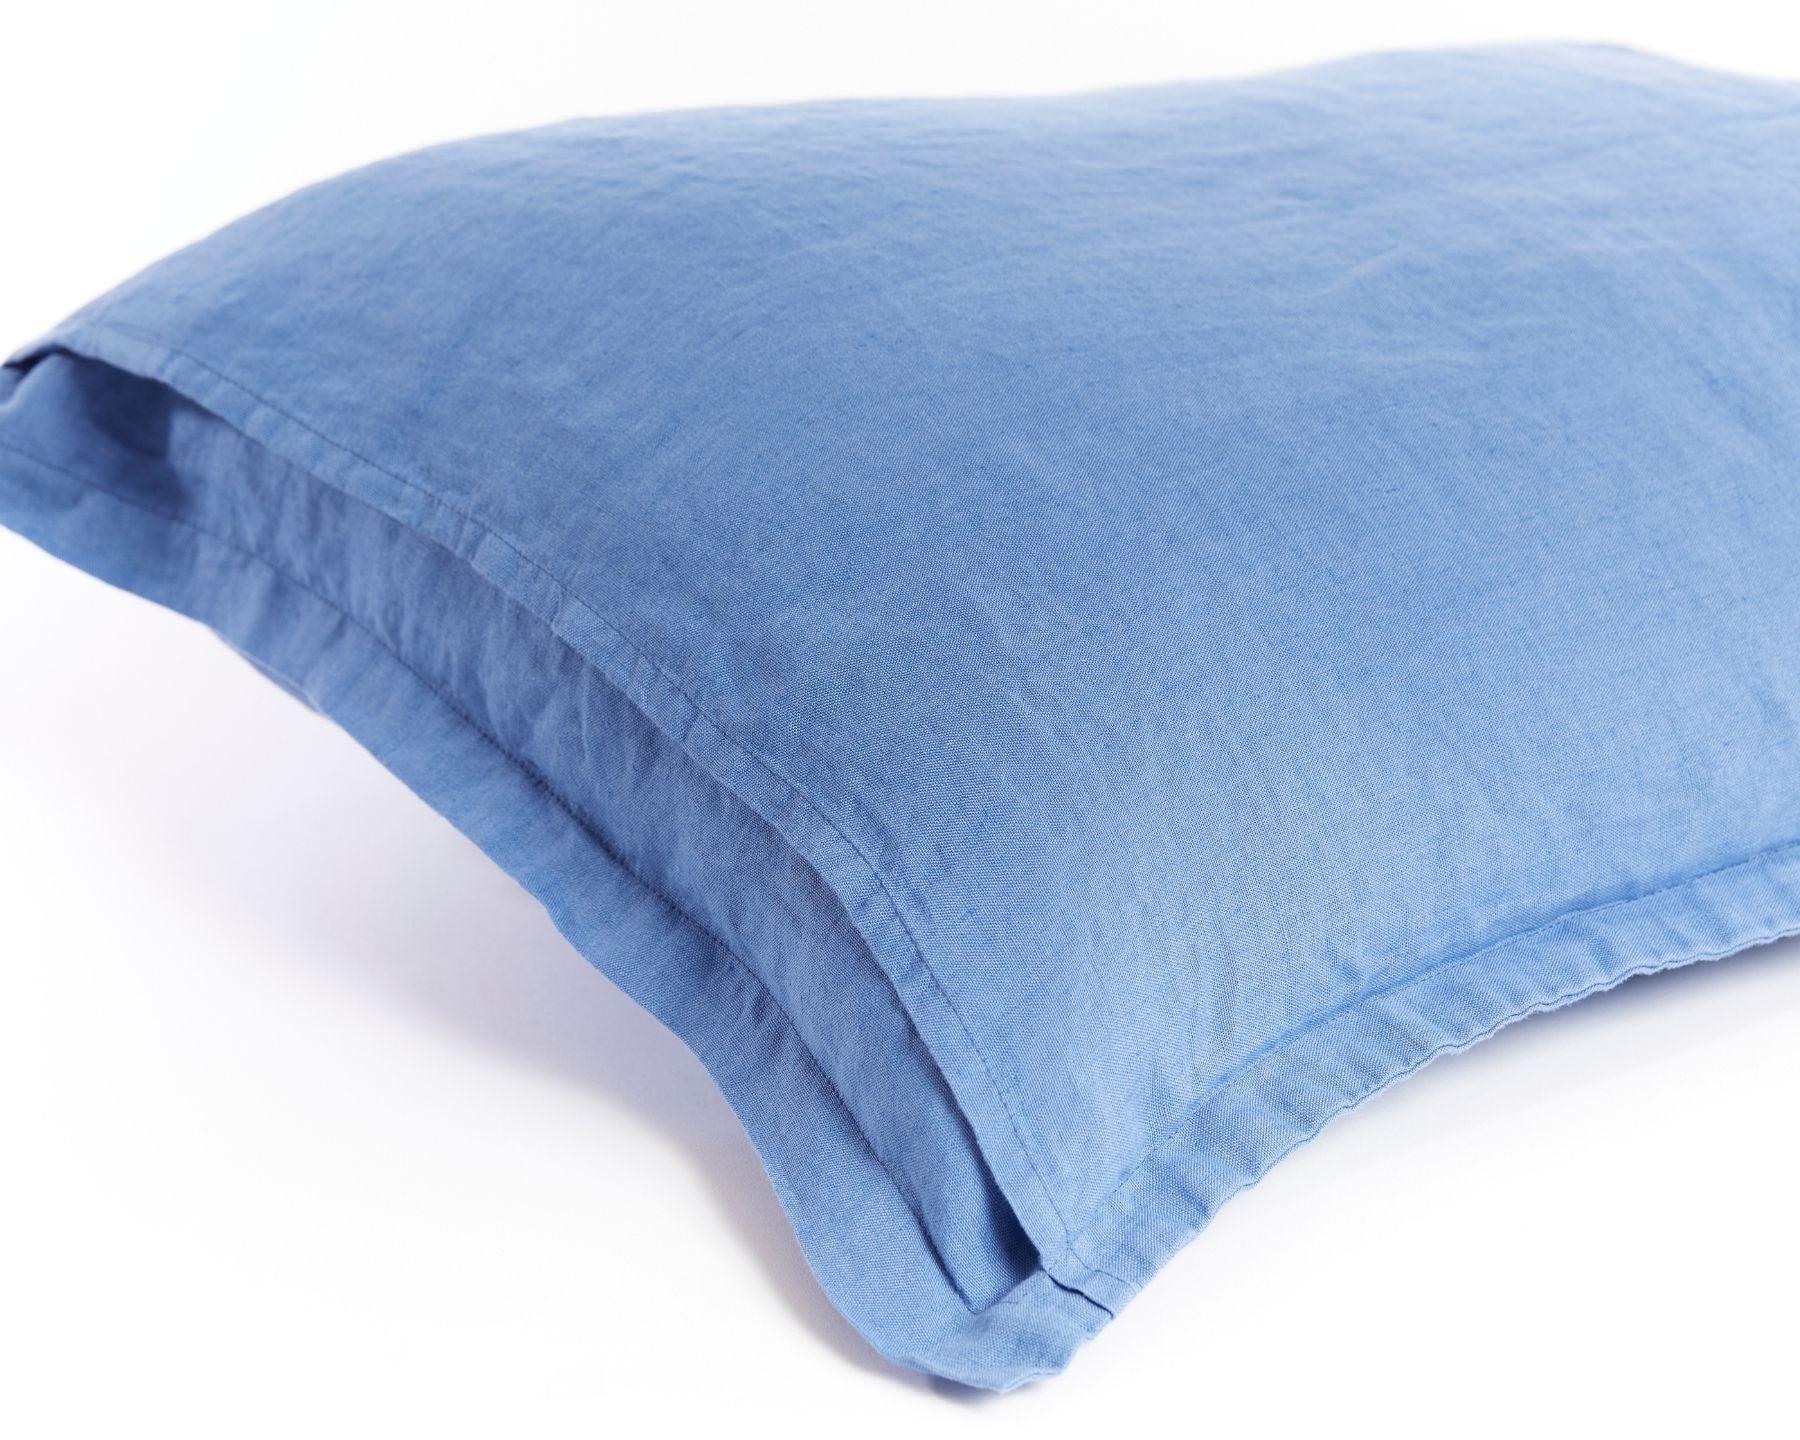 Light blue organic European flax linen pillowcases - Lyseblå (Hørblomst)